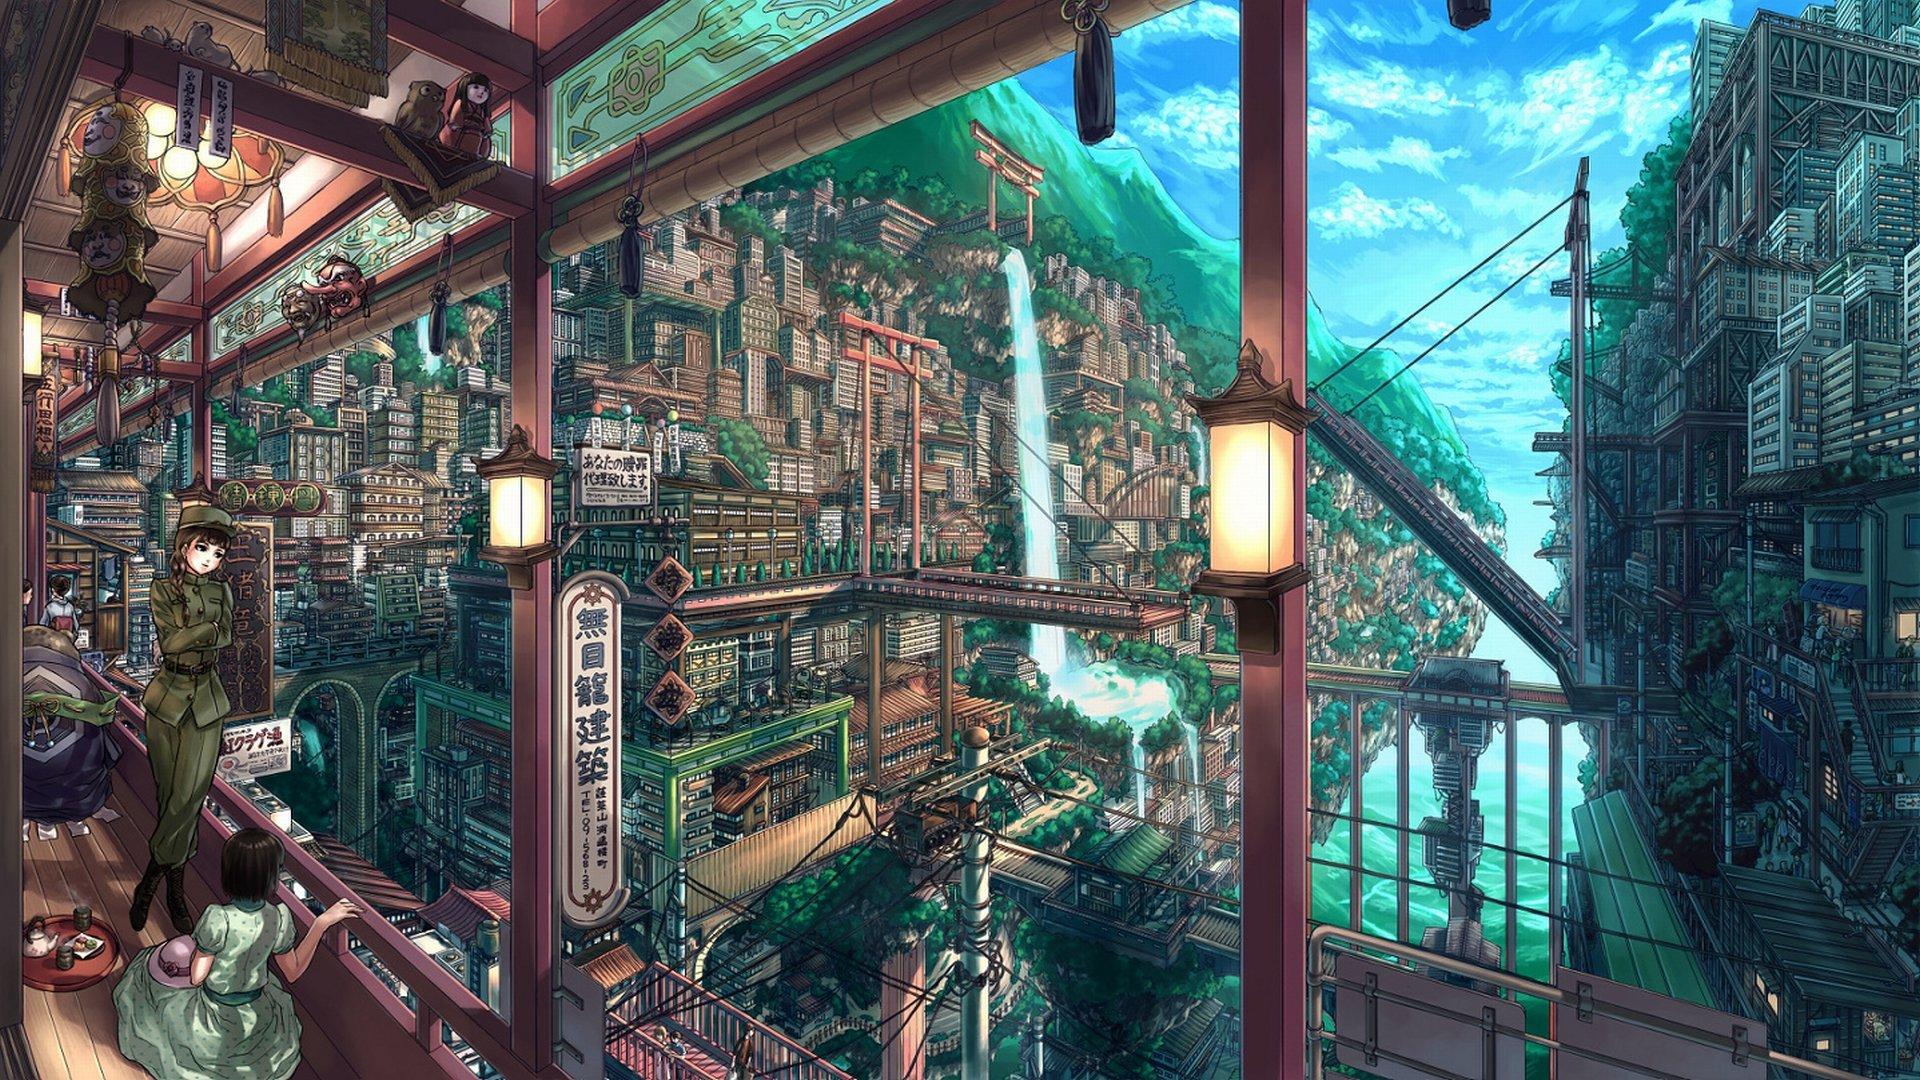 Anime Fan Art wallpaper HD for desktop background